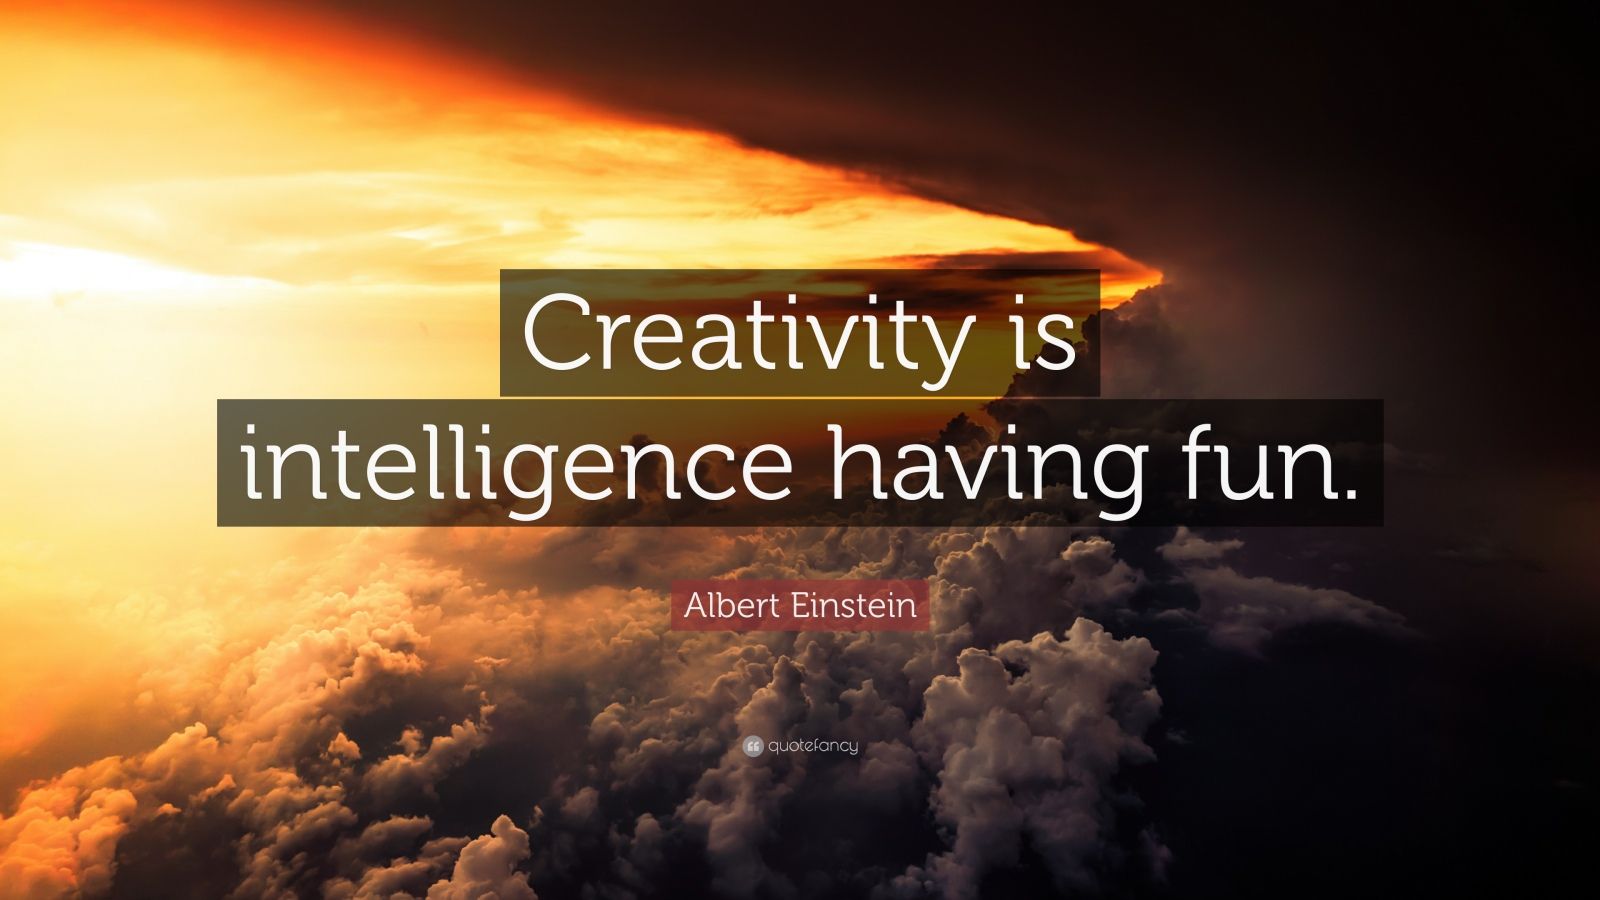 Albert Einstein Quote: “Creativity is intelligence having fun.” (28